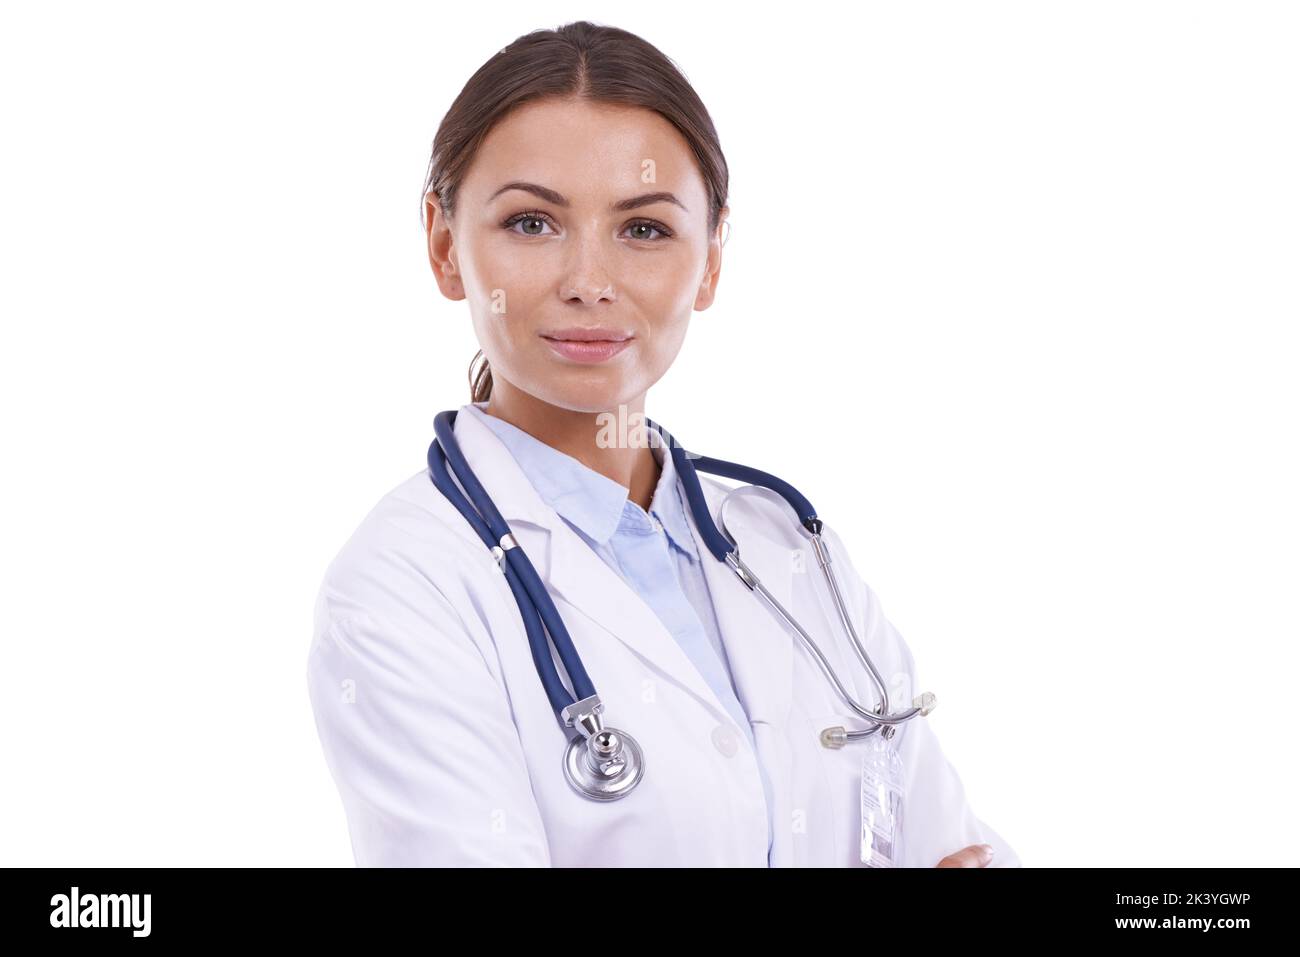 Ihre Gesundheit ist ihr Glück. Porträt eines schönen Arztes, der mit gekreuzten Armen vor weißem Hintergrund steht. Stockfoto